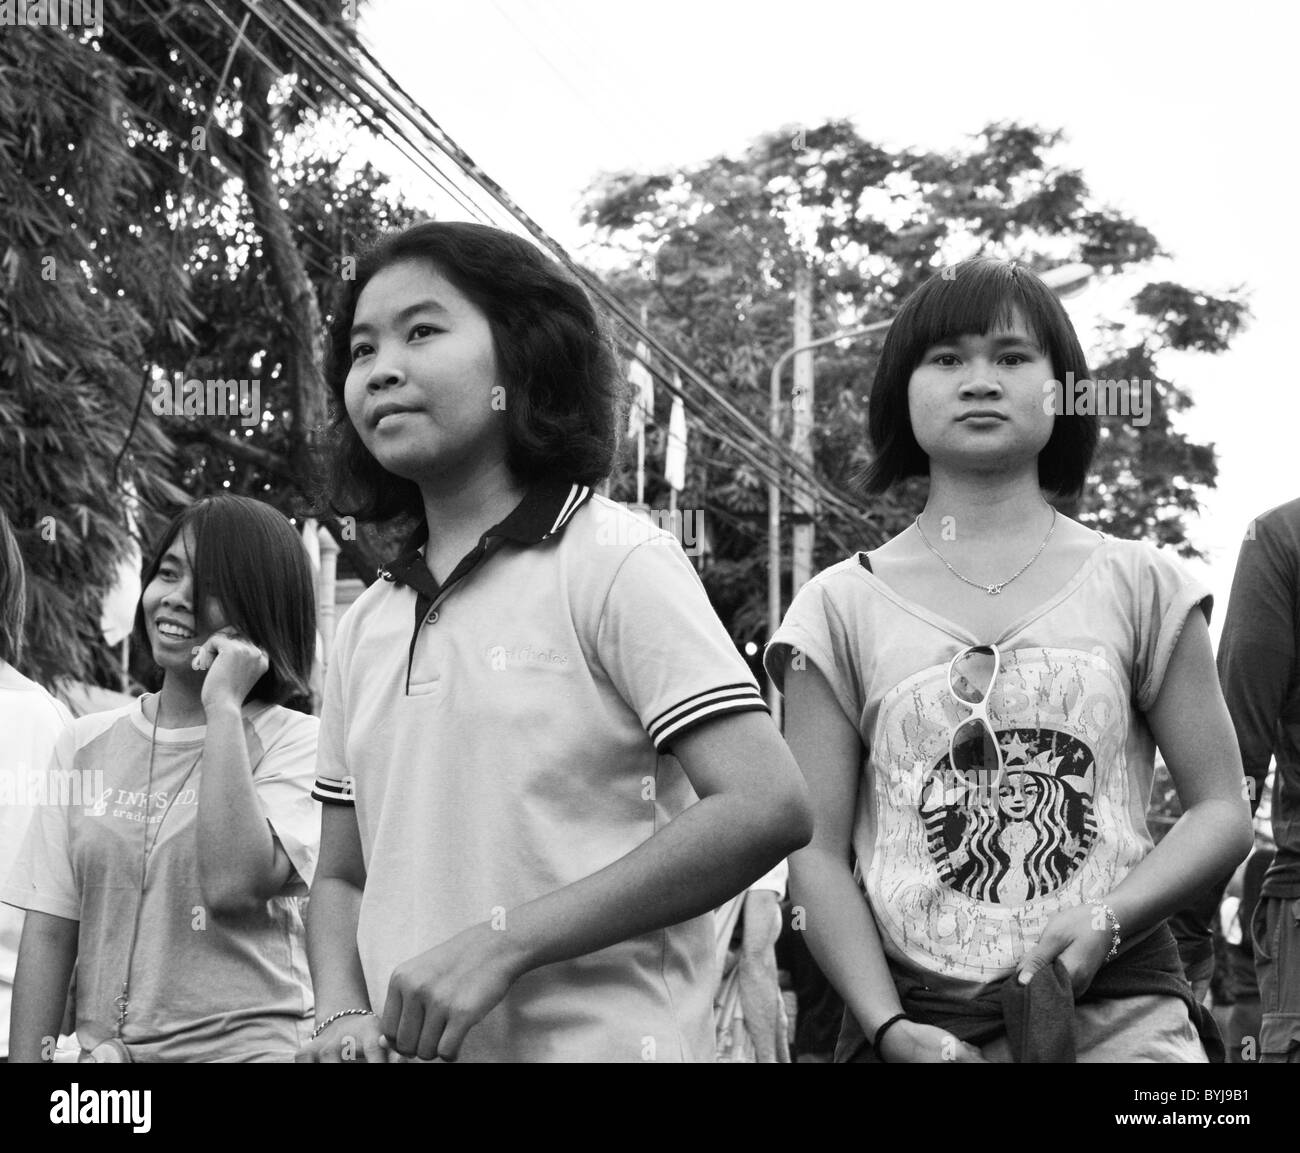 Photographie en noir et blanc de jeunes filles sur une rue en Thaïlande Banque D'Images